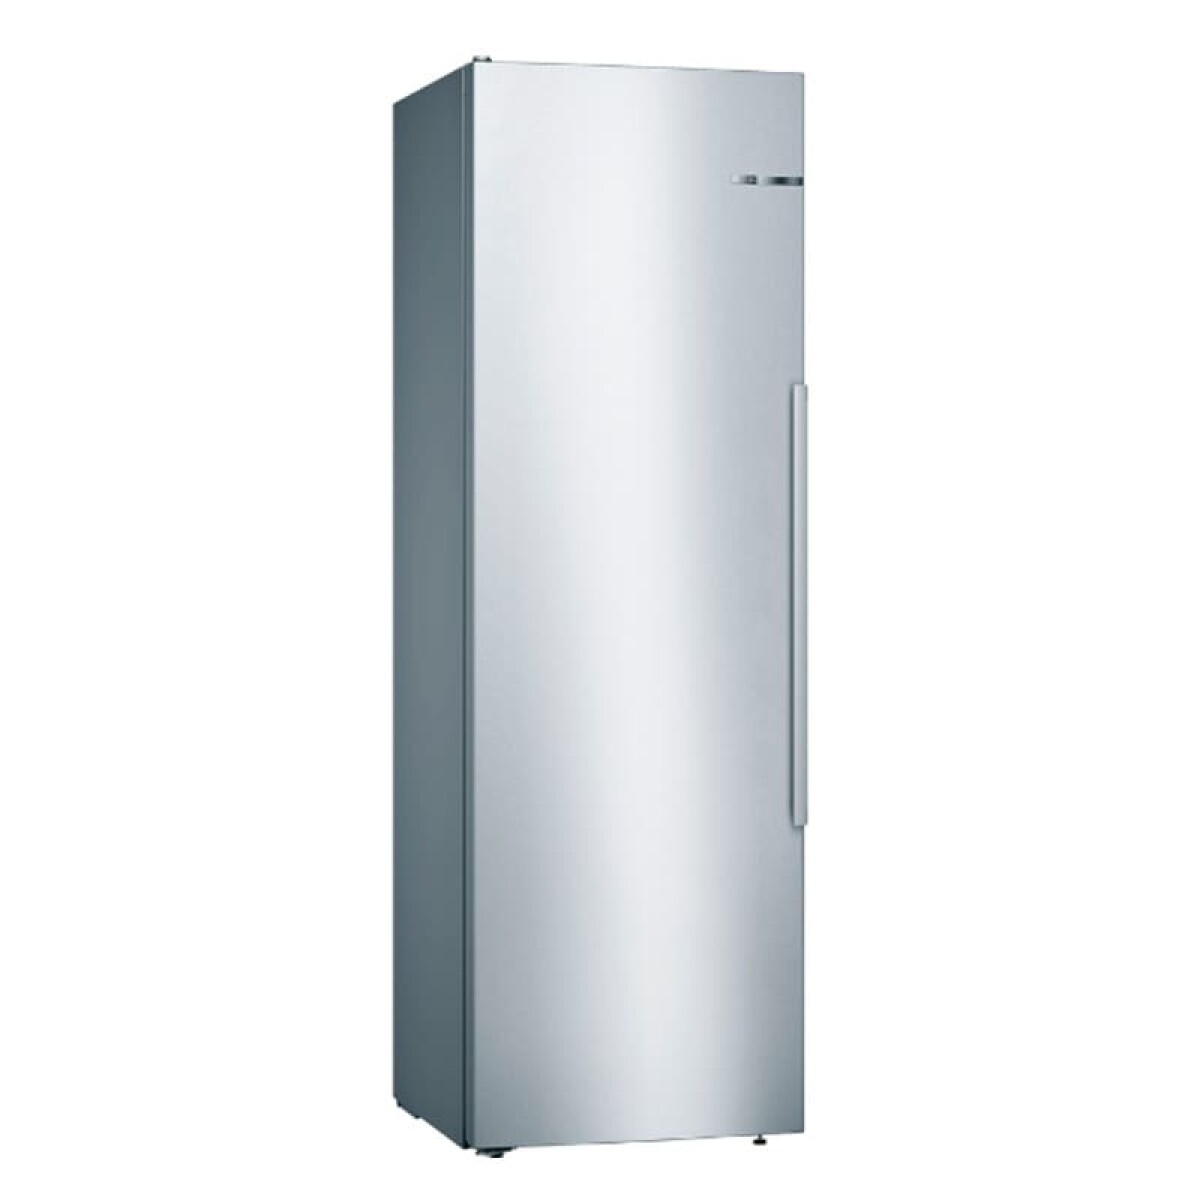 KSV36AIEP Refrigerador Bosch 1 puerta INOX. 346 Lts. - 001 